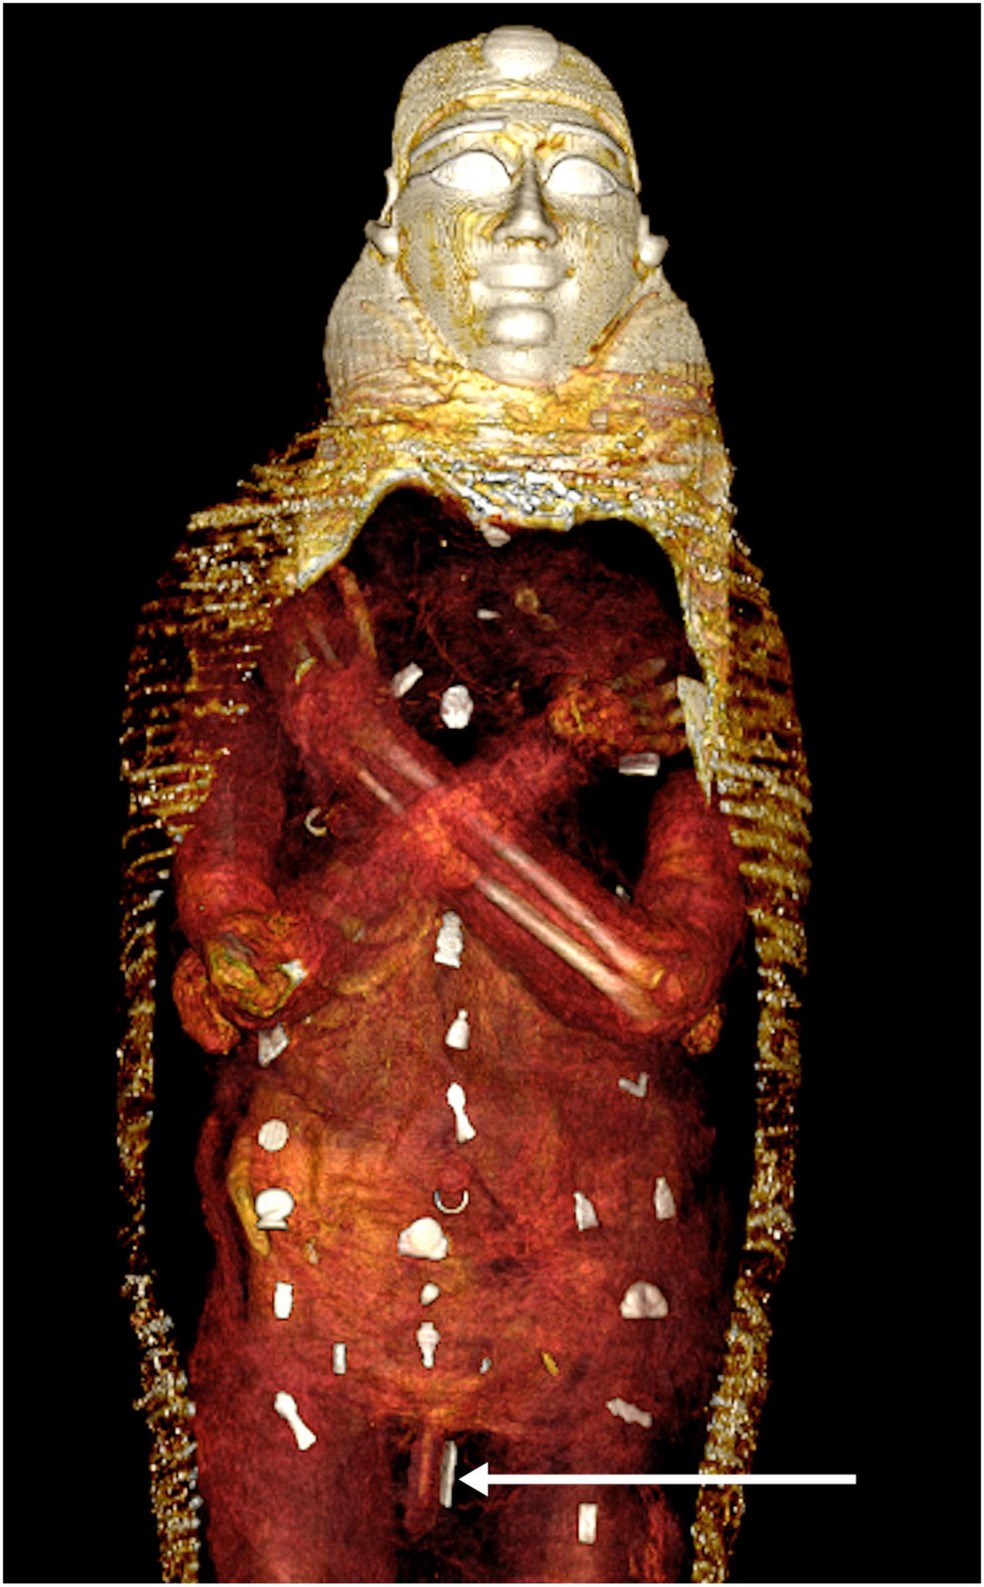 Tomografia mostra posicionamento dos amuletos no corpo do "Menino de Ouro" — Foto: Frontiers in Medicine/Divulgação